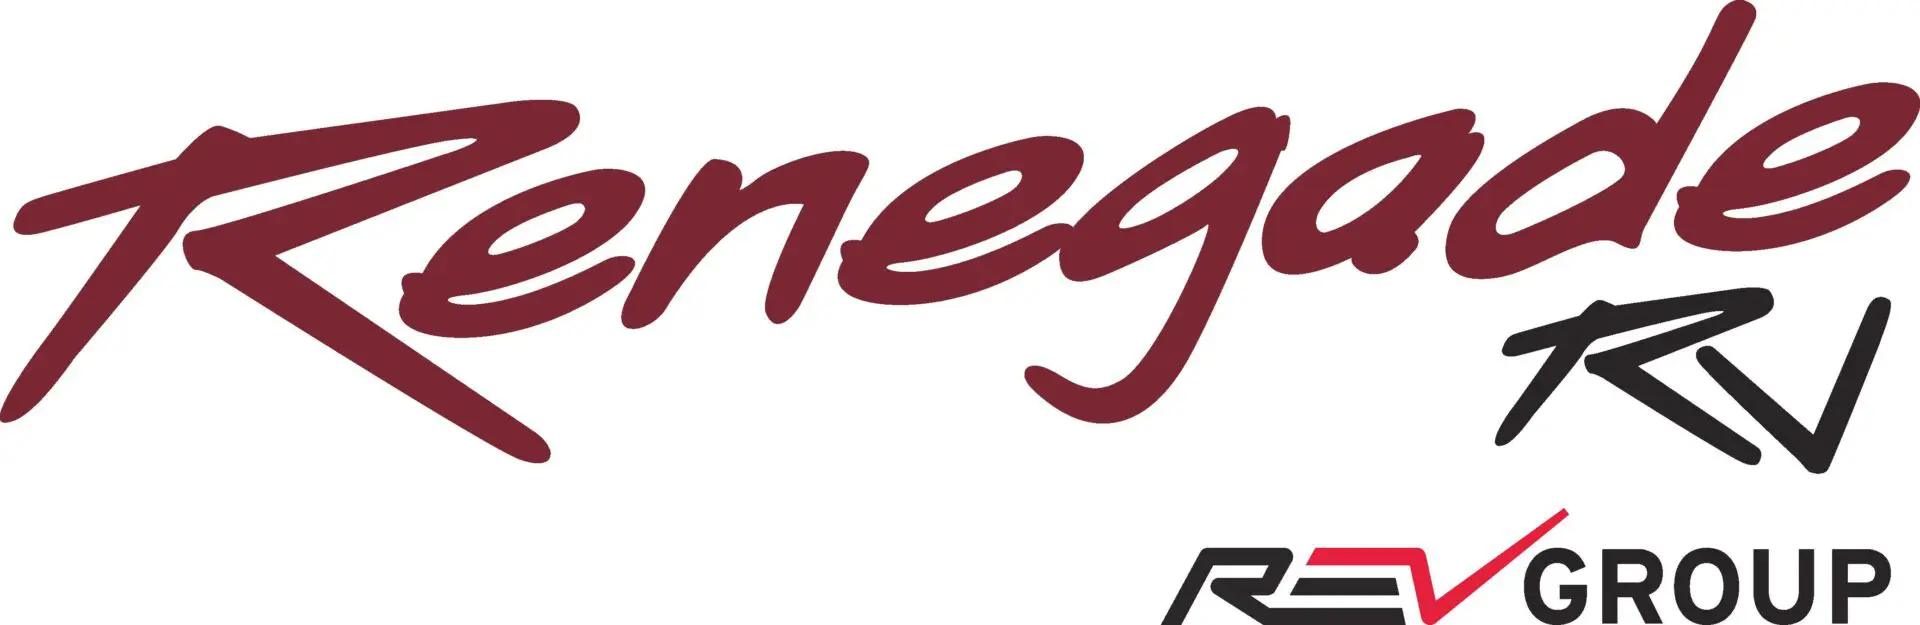 NEW 2017 Renegade & REV logo copy